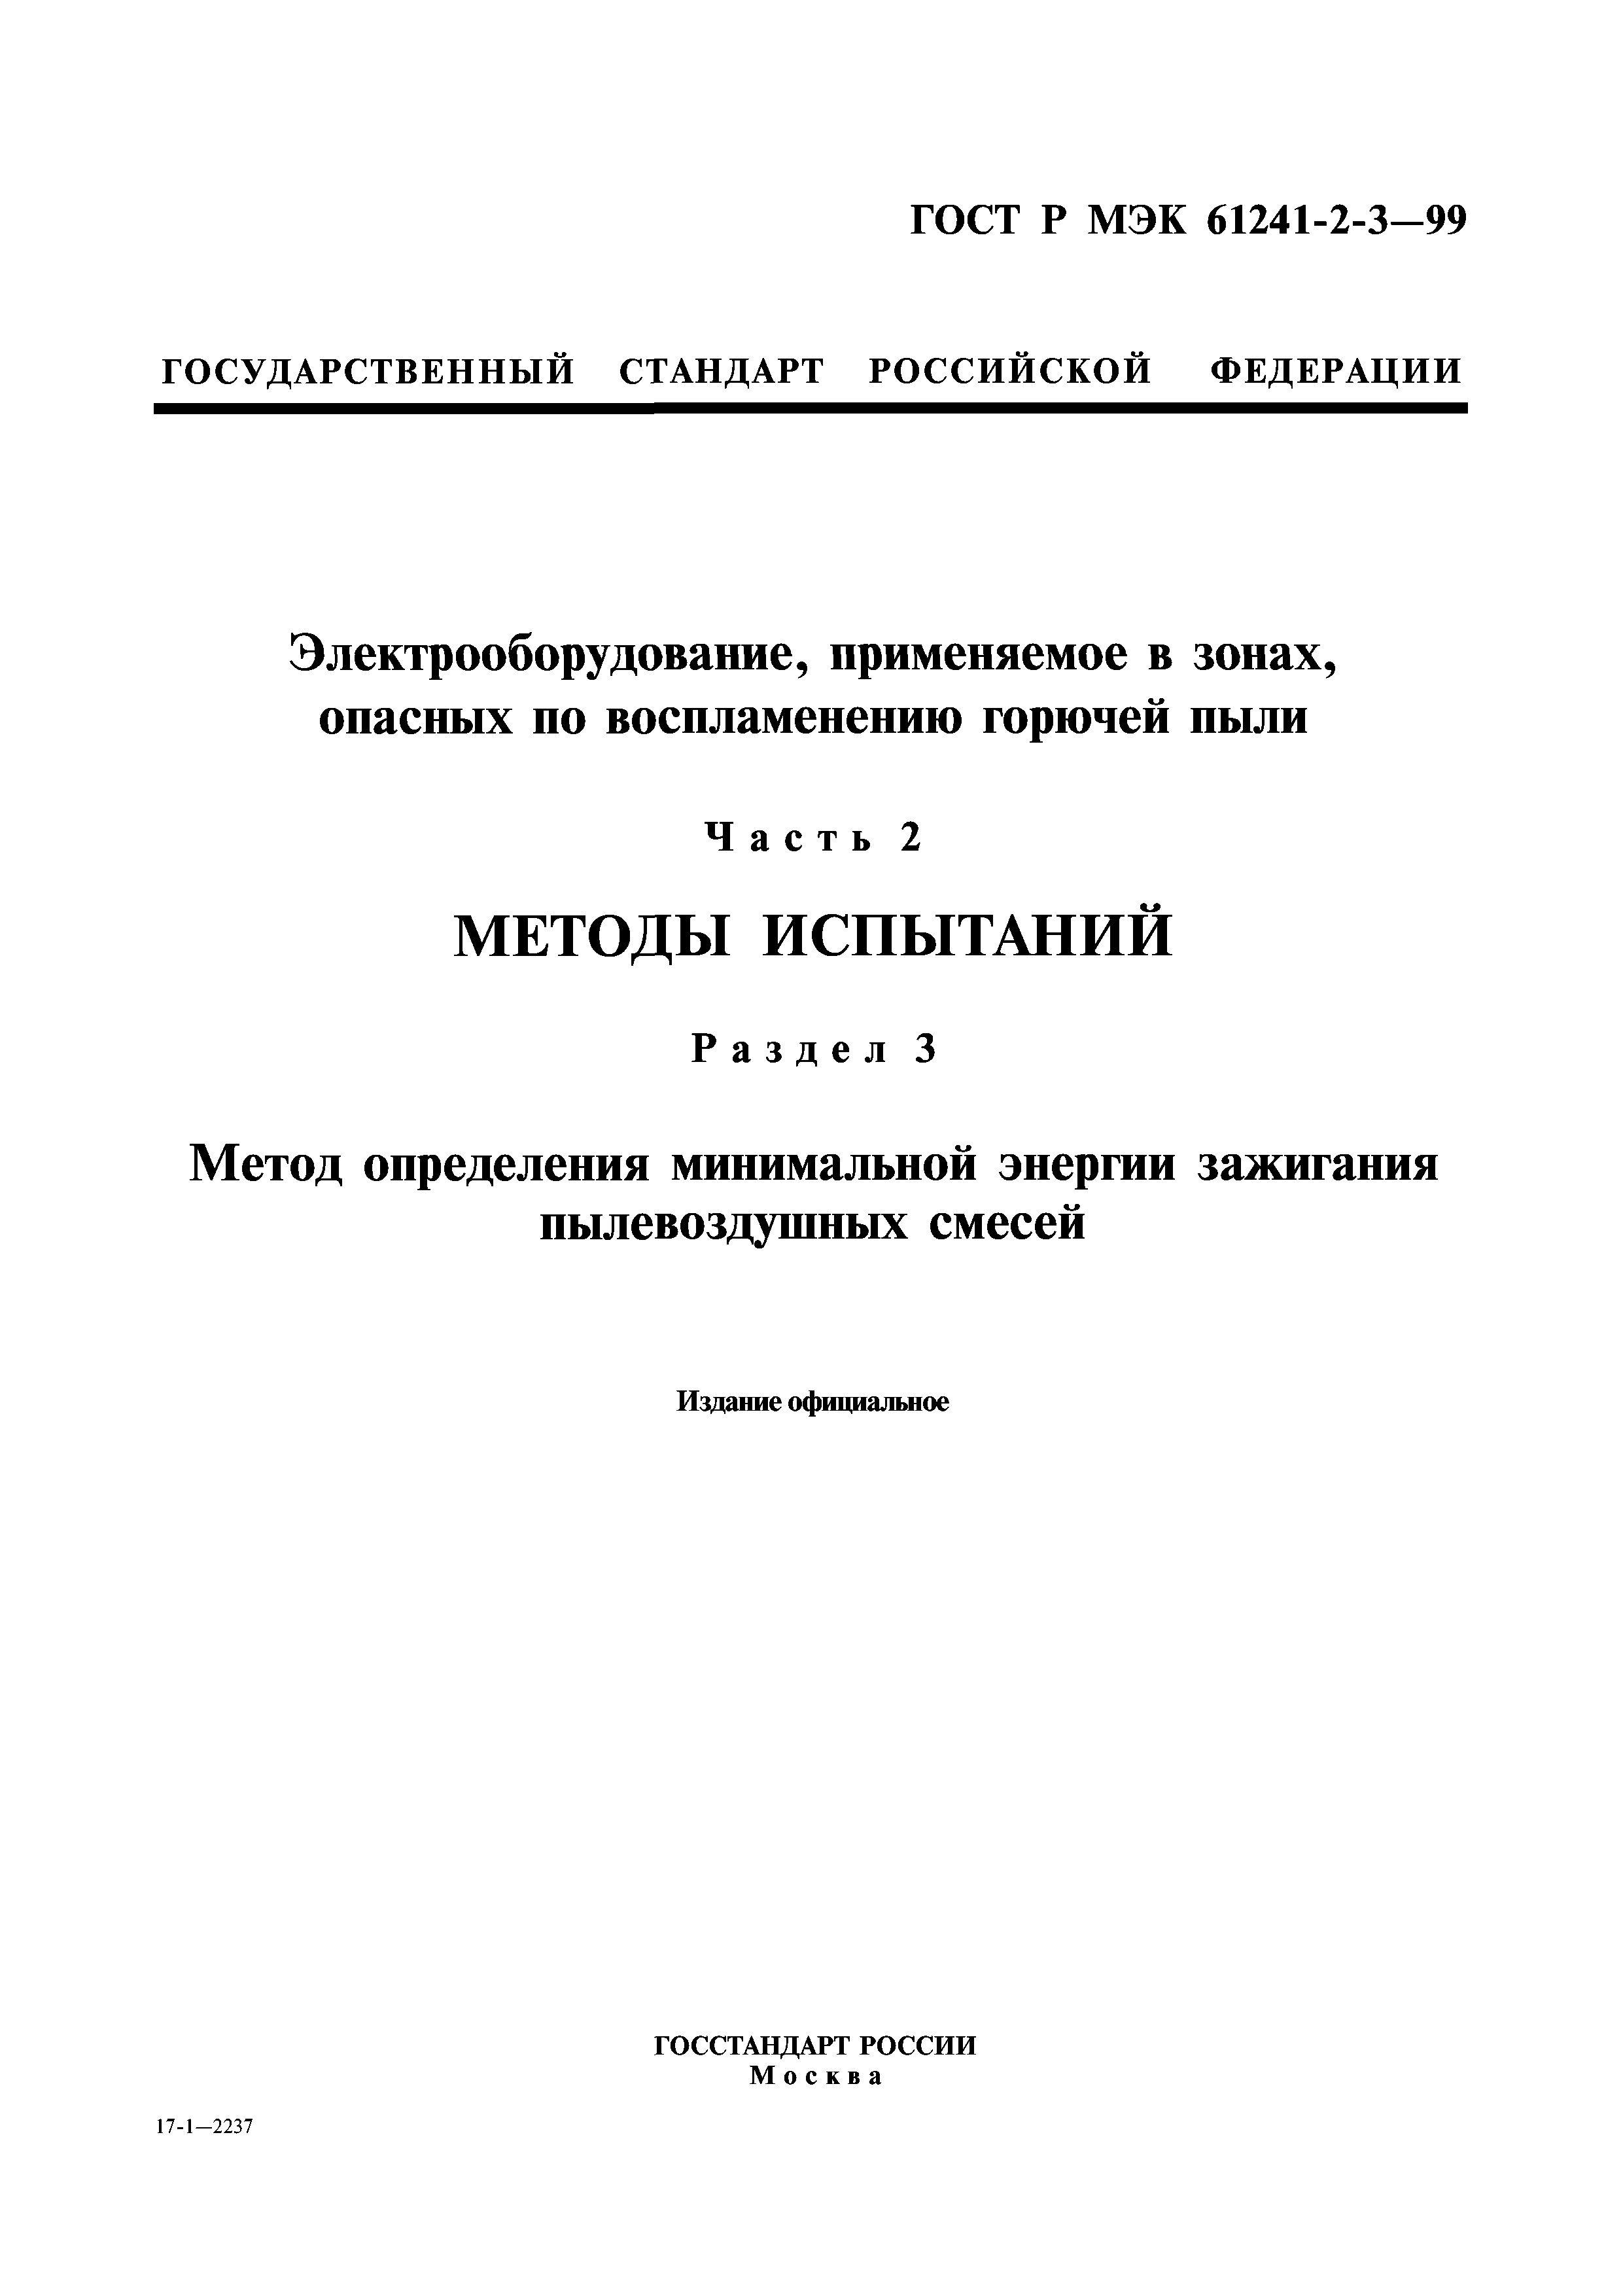 ГОСТ Р МЭК 61241-2-3-99